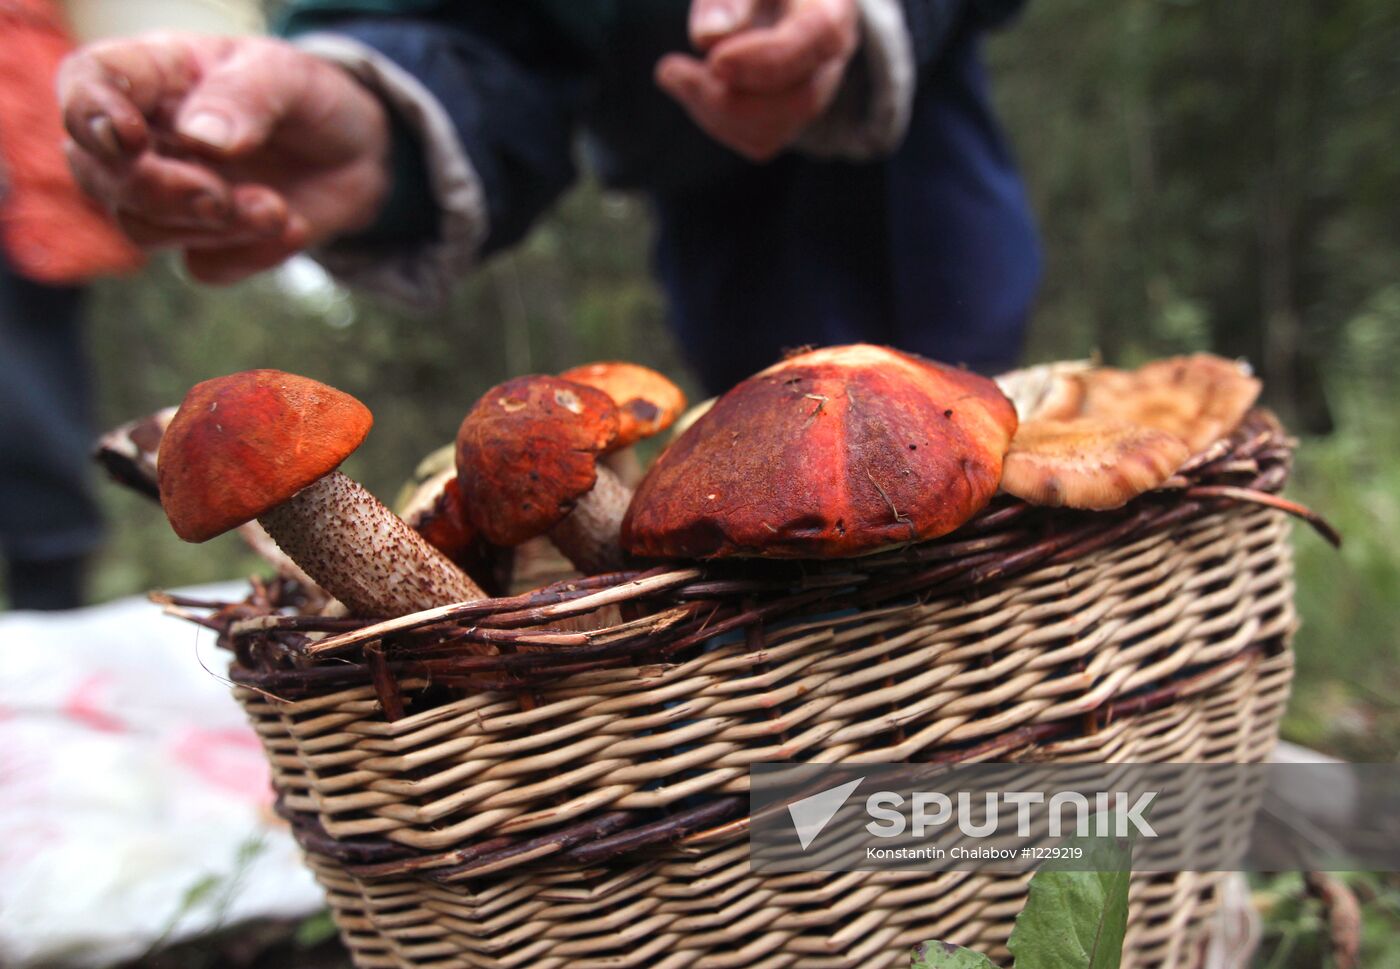 Mushroom hunting in Novgorod Region forests